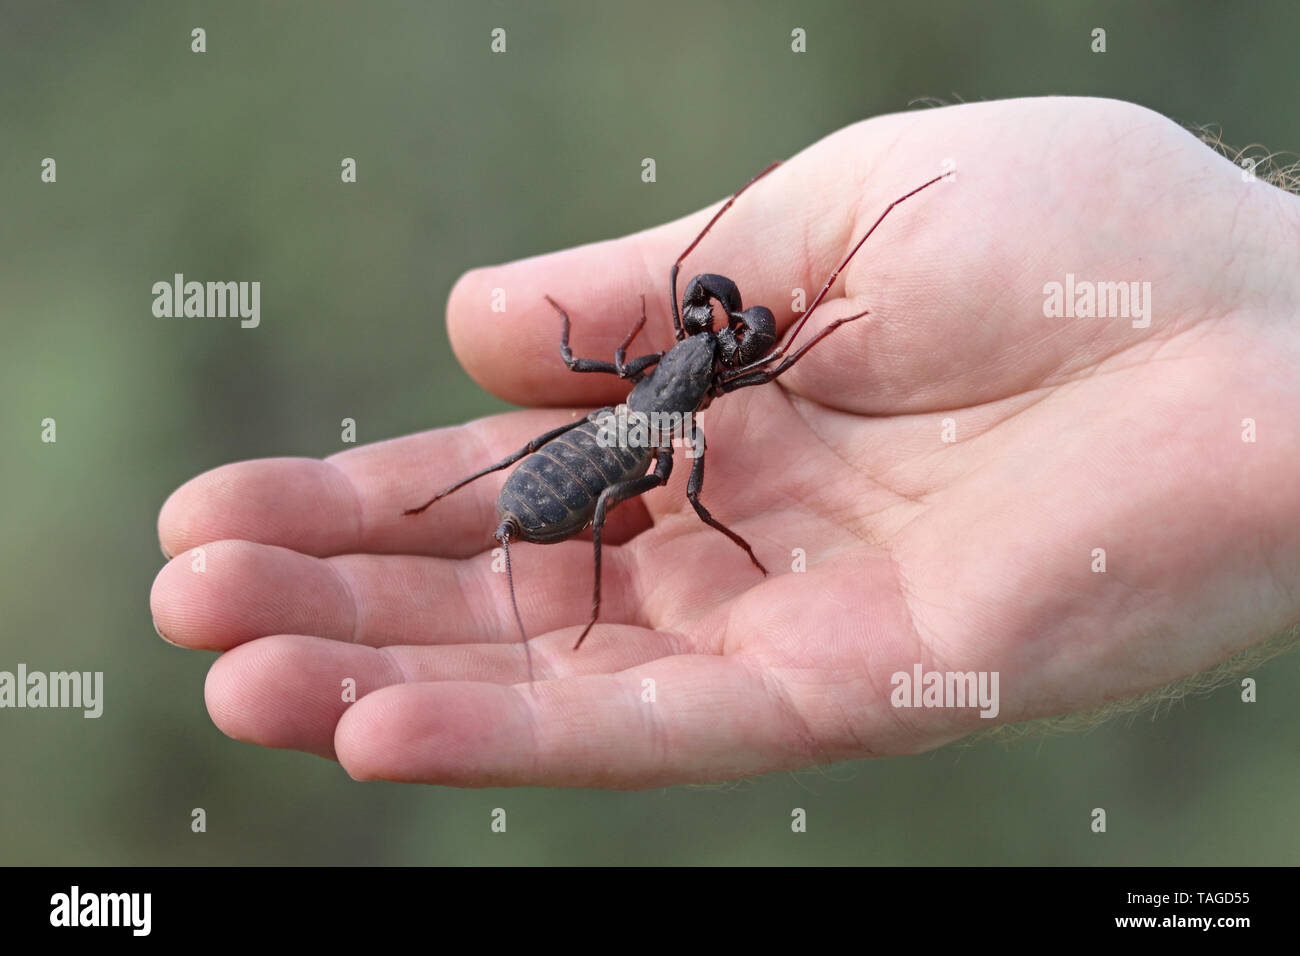 Giant Vinegaroon or Giant Whip Scorpion (Mastigoproctus giganteus giganteus) in hand Stock Photo